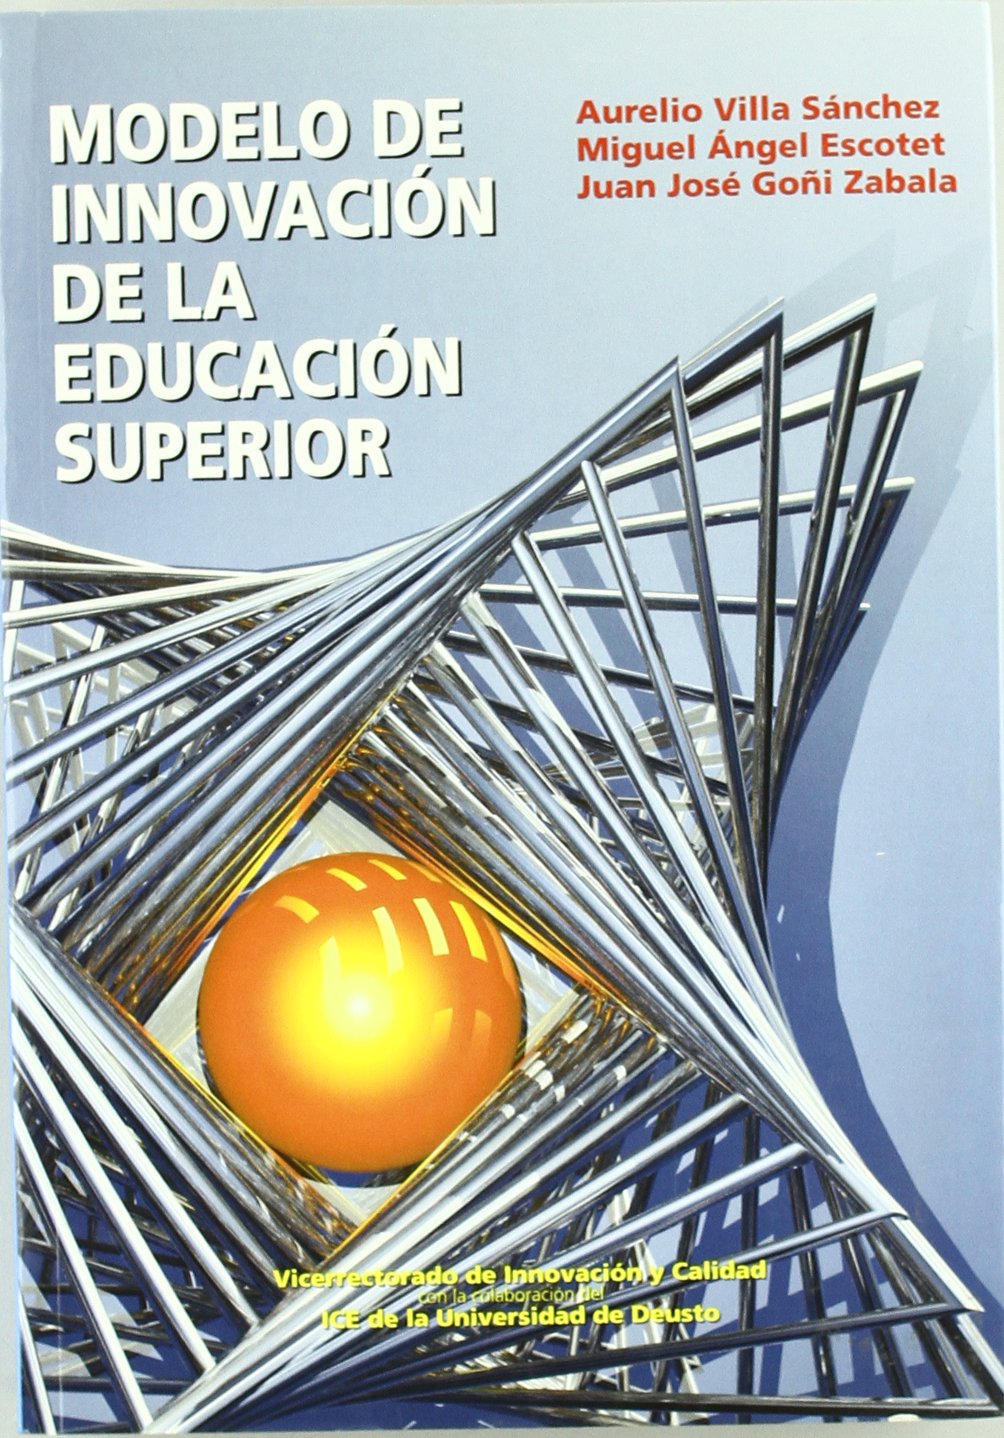 Imagen de portada del libro Modelo de innovación de la Educación Superior